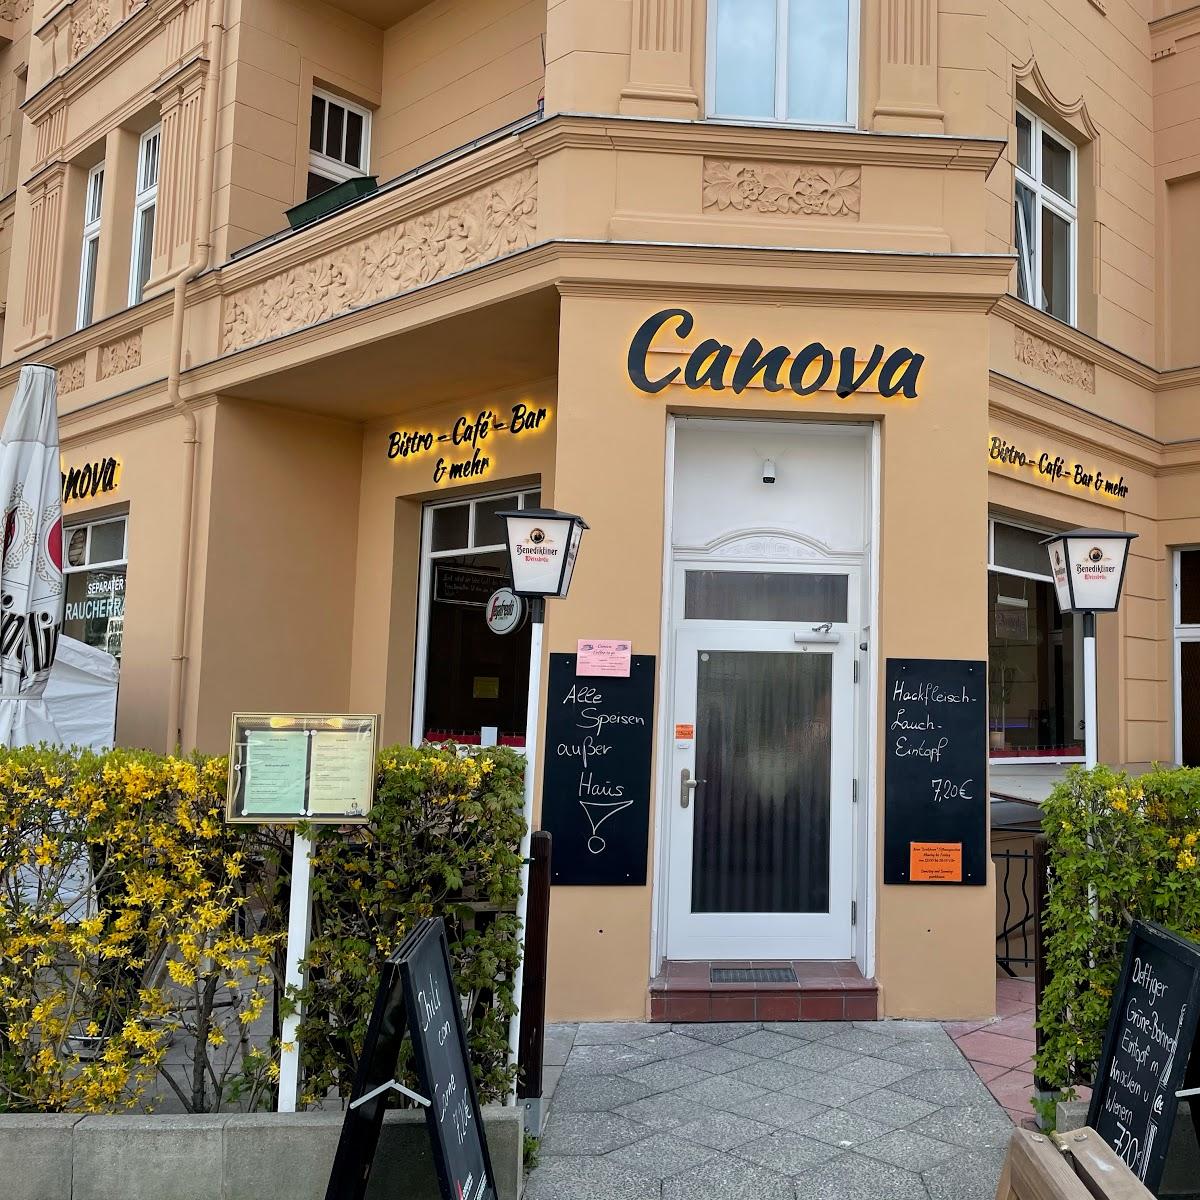 Restaurant "Canova" in Berlin